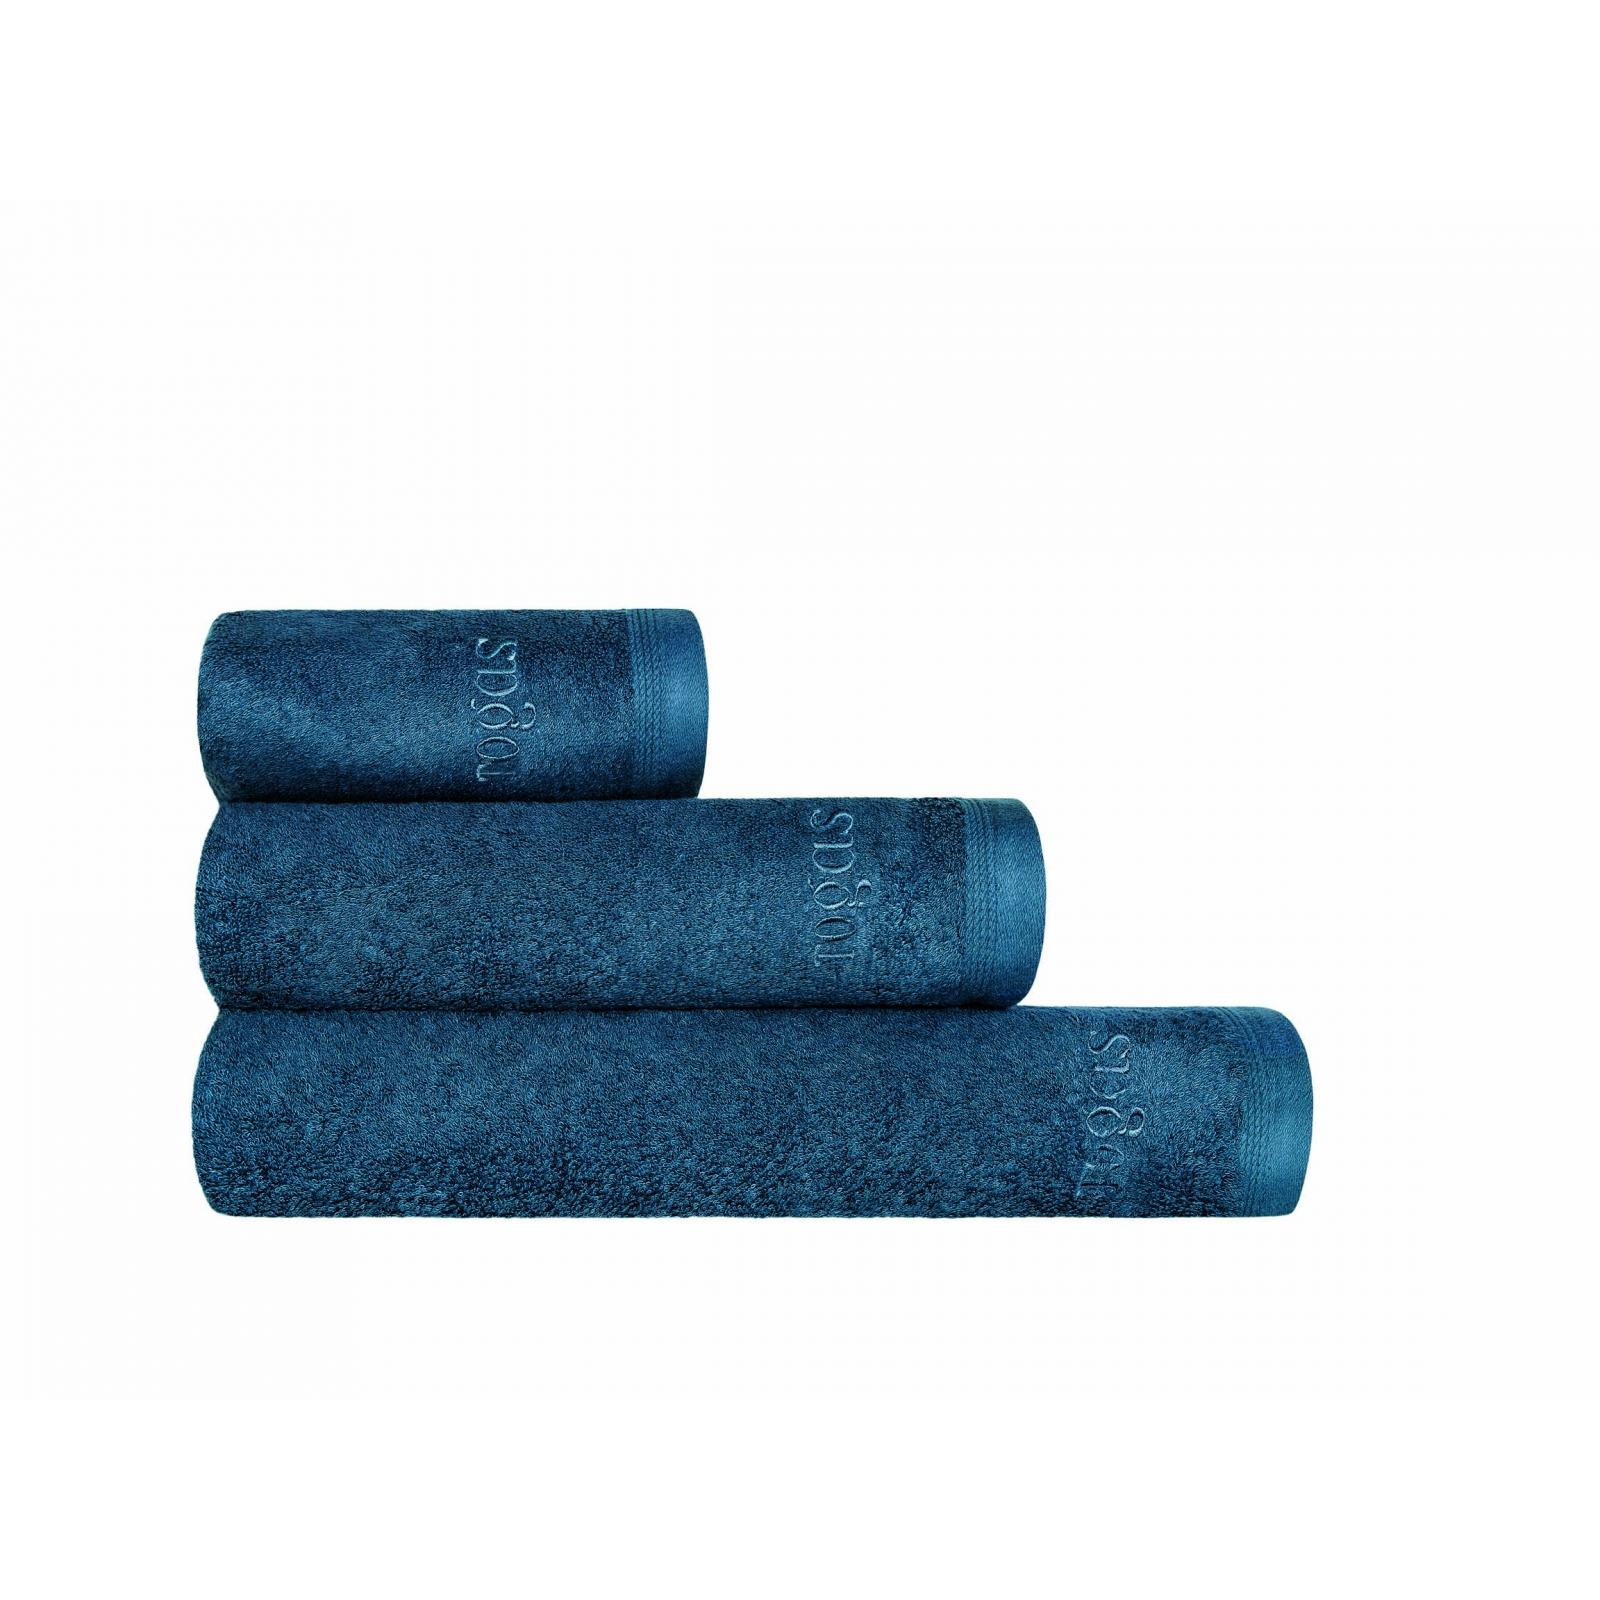 Полотенце Togas Пуатье темно-синее 40х60 см полотенце togas пуатье светло лиловый 40х60 см